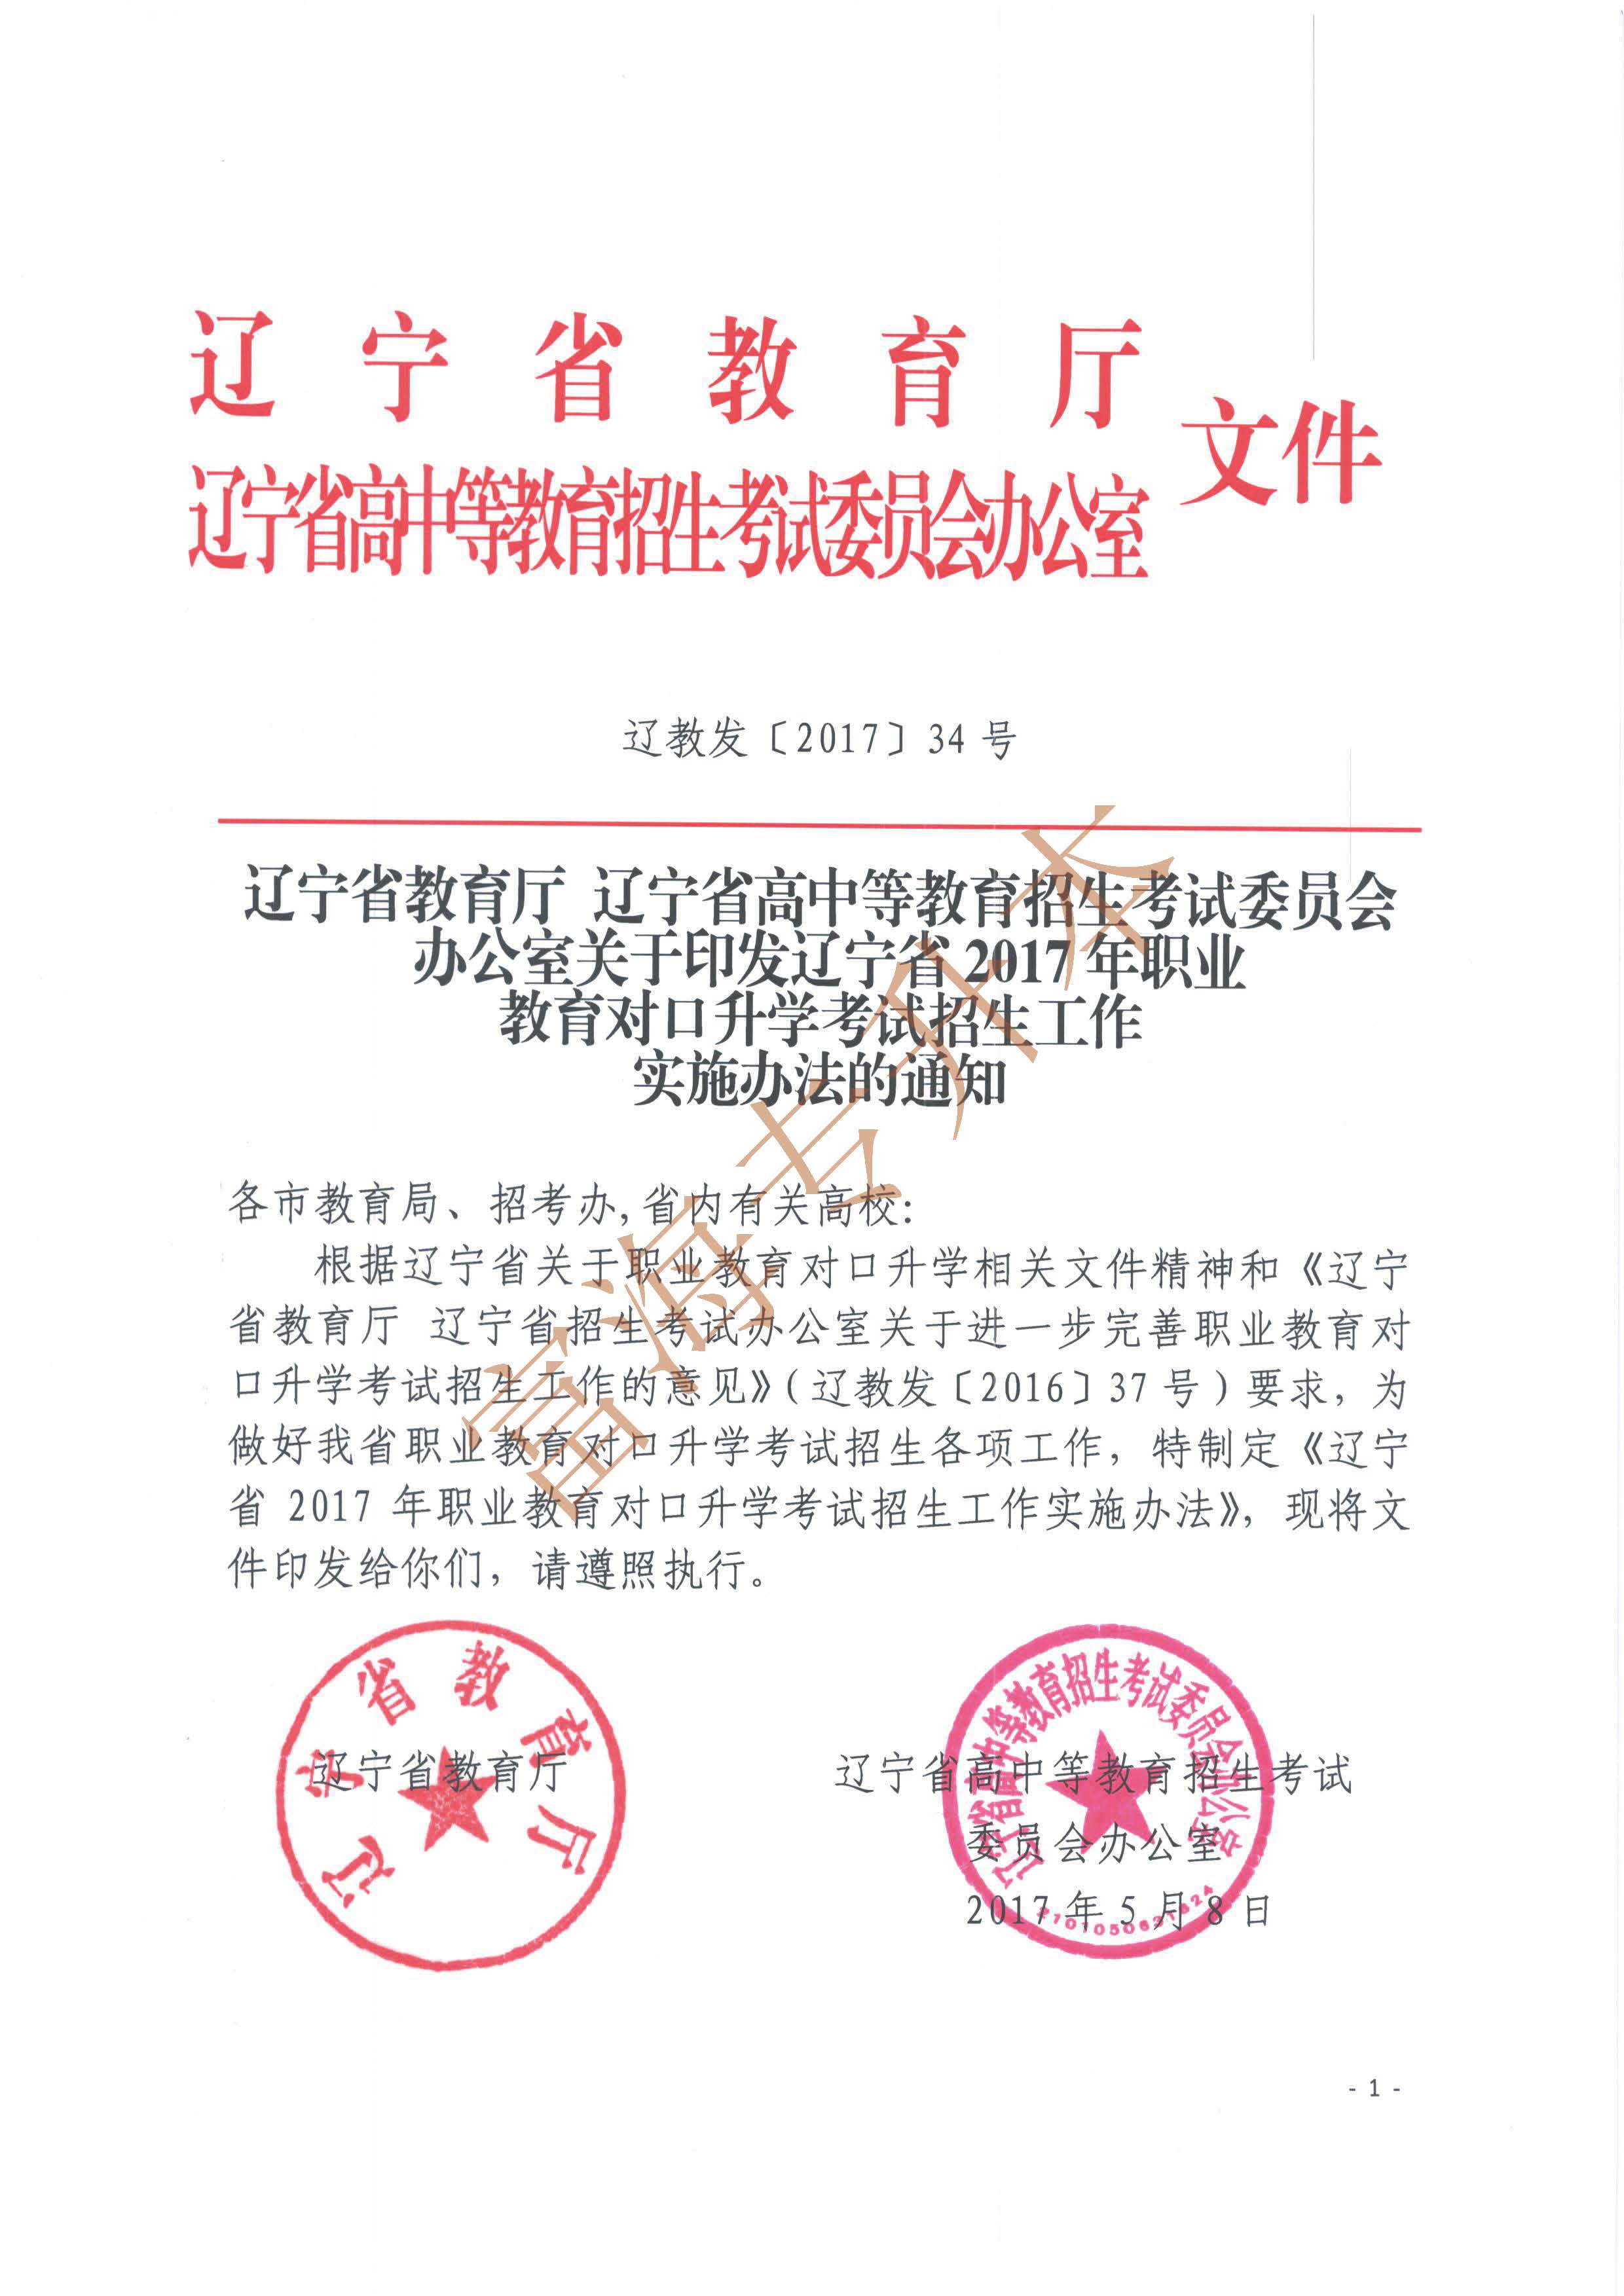 辽宁省2017年职业教育对口升学考试招生工作实施办法的通知1